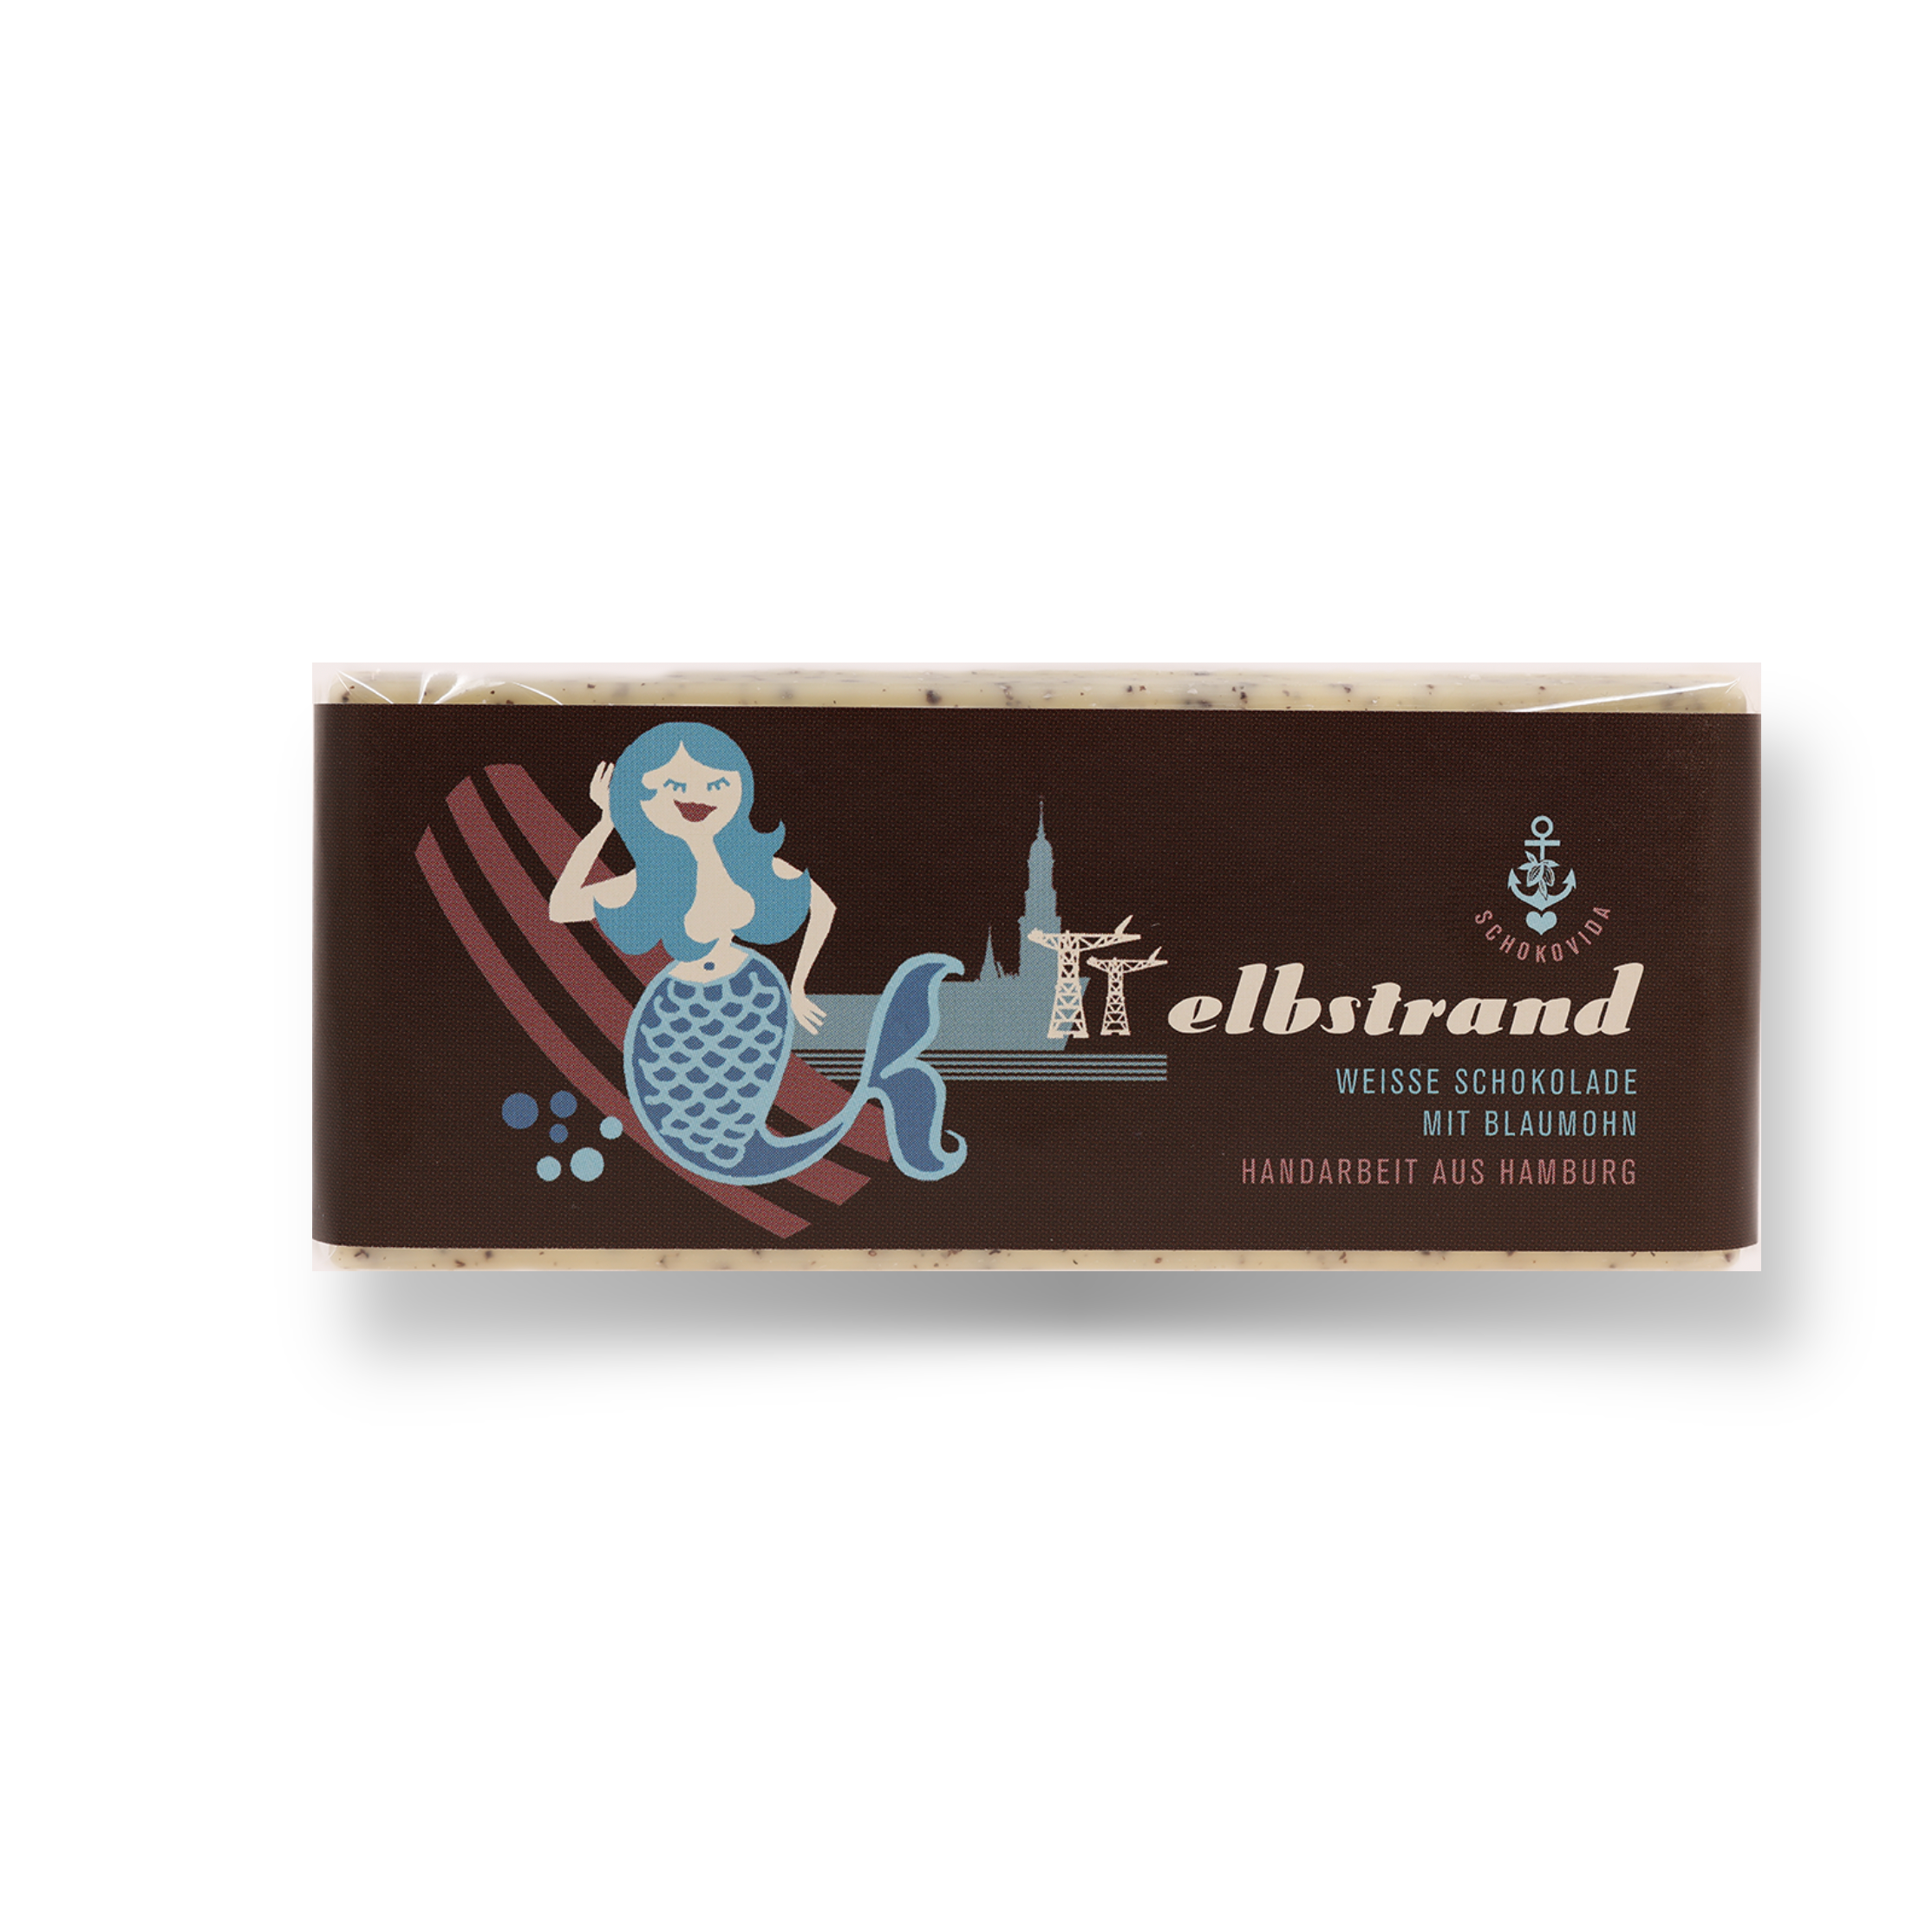 Elbstrand lütt – Weiße Schokolade mit Blaumohn, 50g